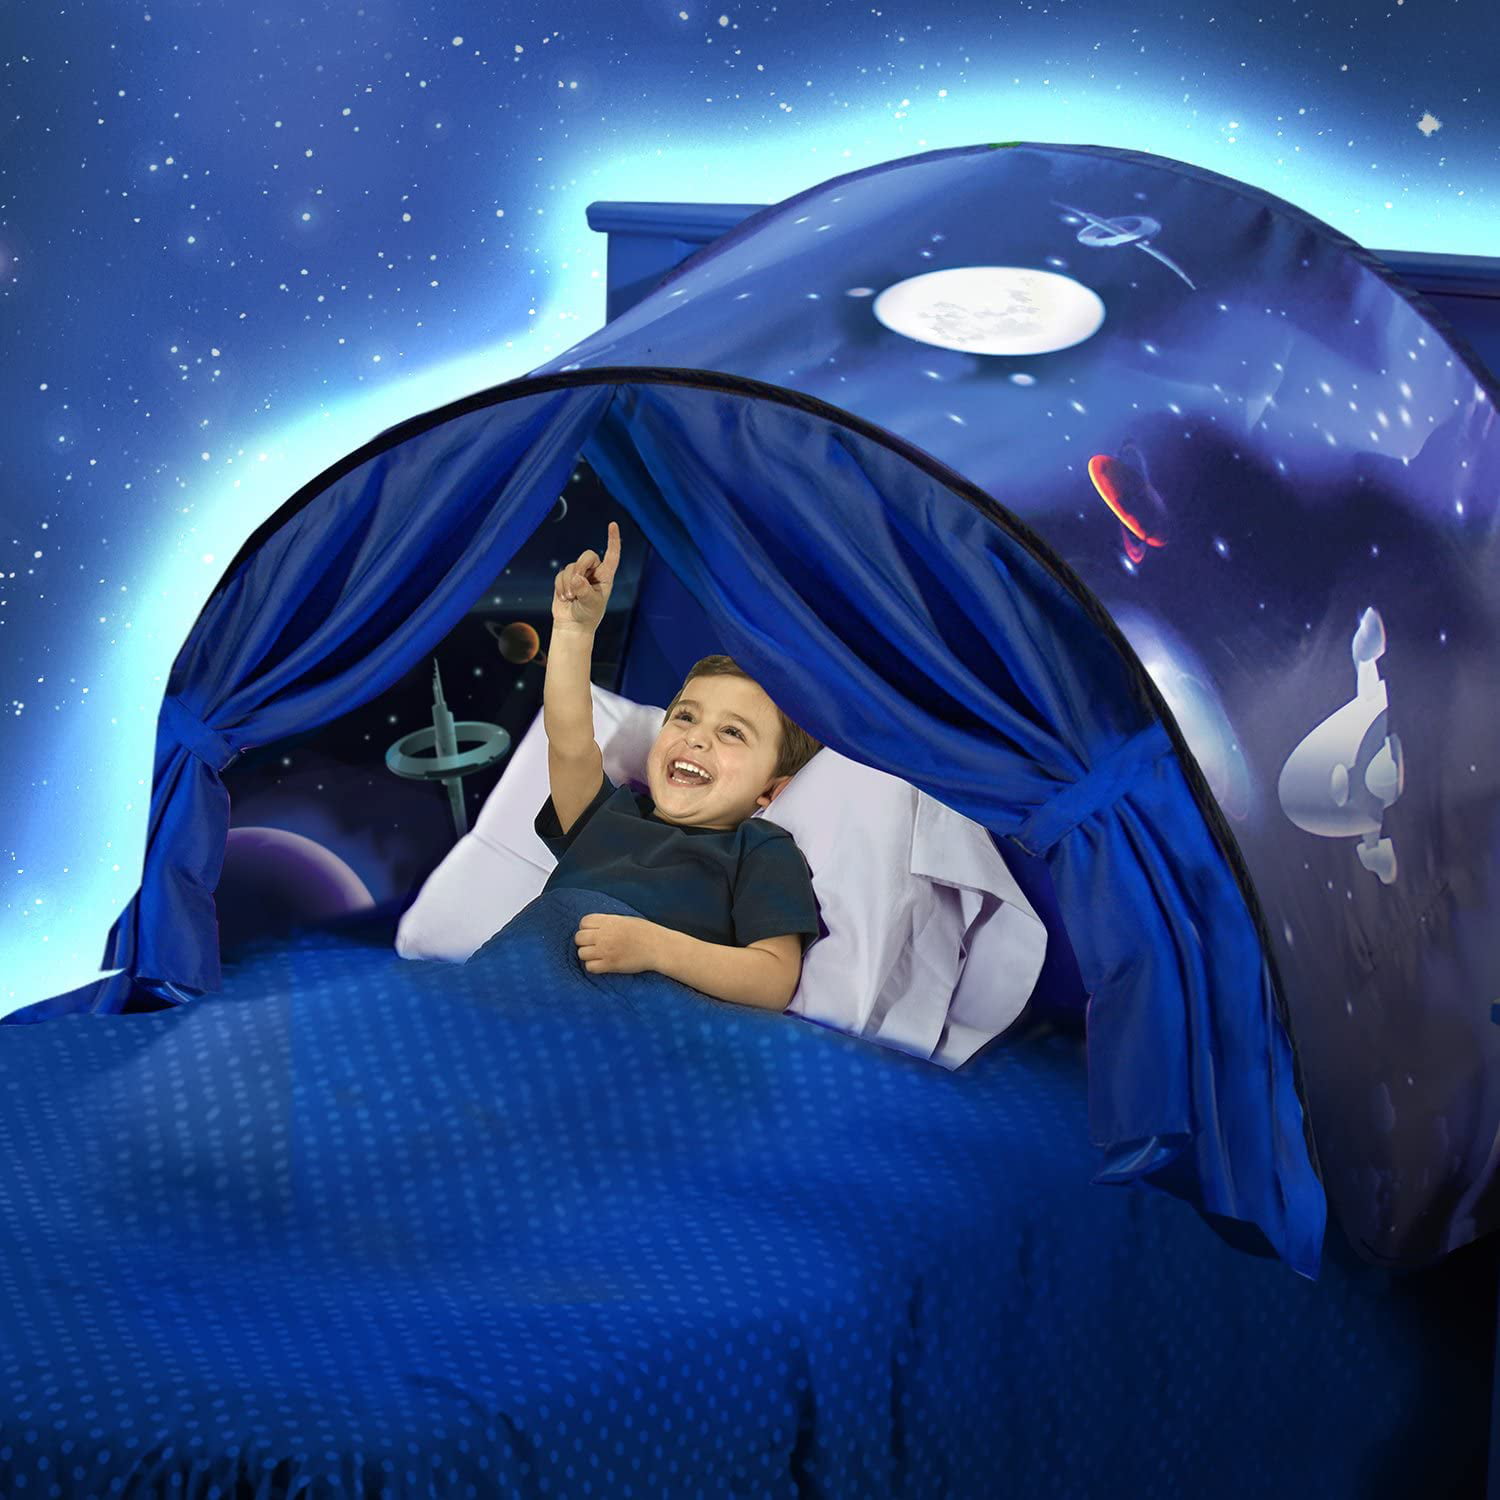 Fantsy Unicorn Magical Dream Tents Folding Play Bed Pop Up Tent+LED Light Gift U 